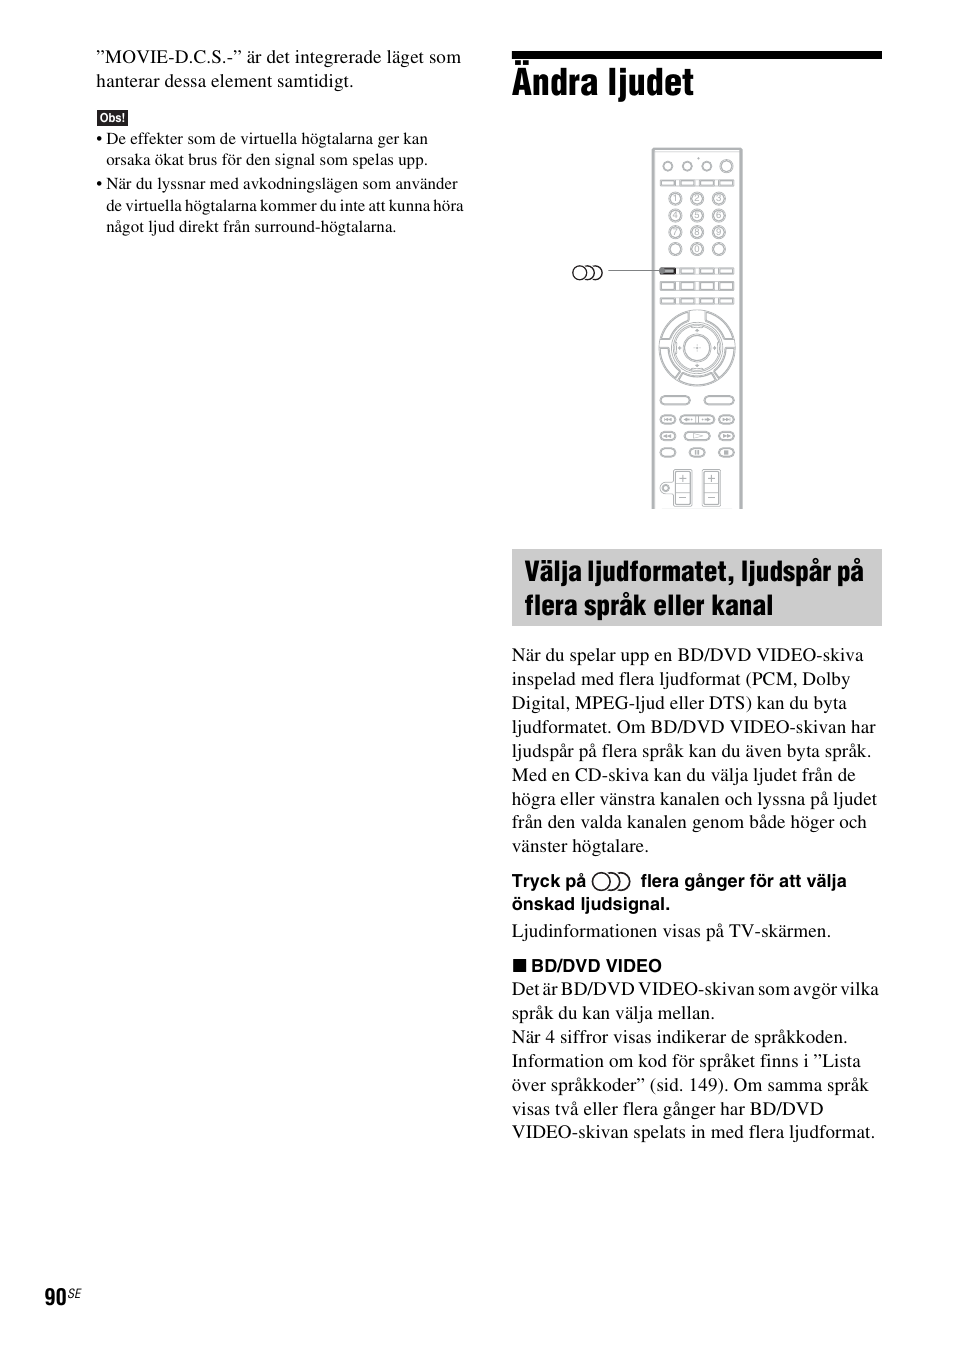 Ändra ljudet, Ljudinformationen visas på tv-skärmen | Sony BDV-IS1000 Manual del usuario | Página 250 / 315